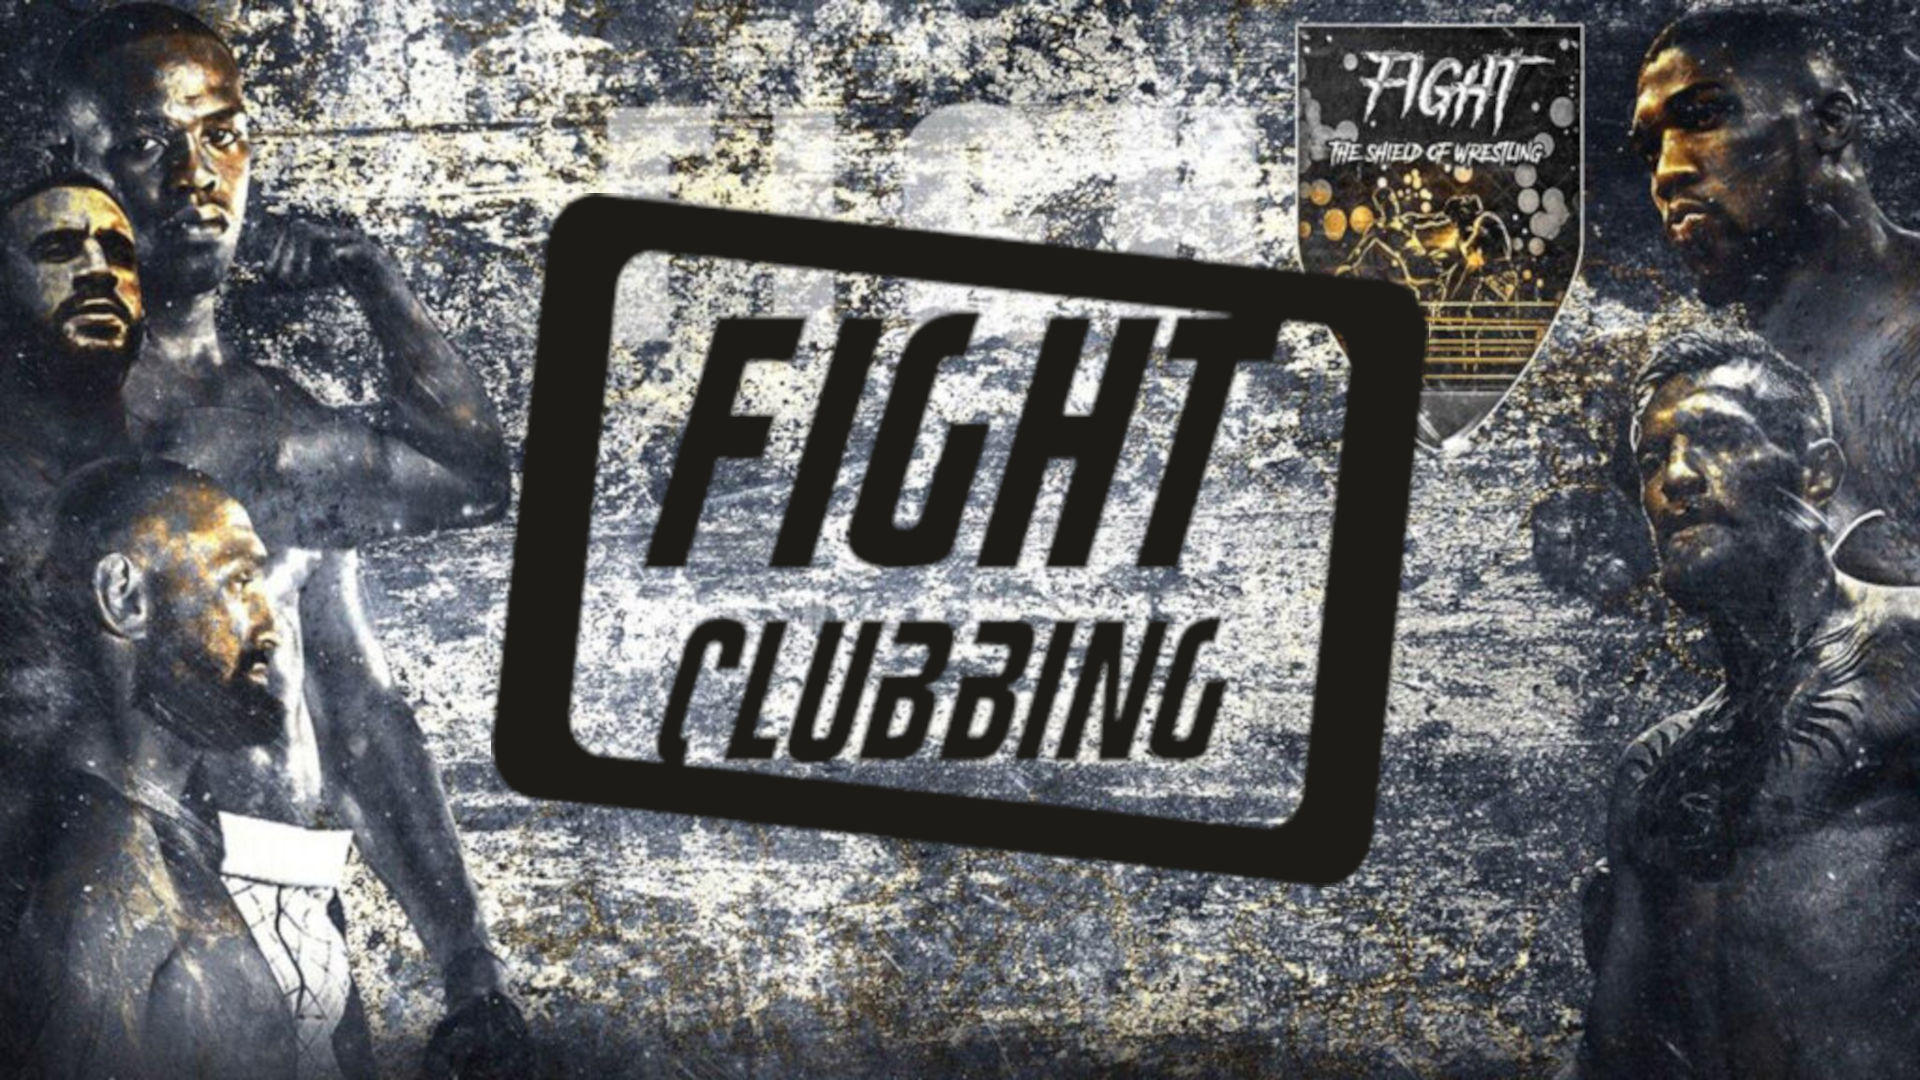 Fight Clubbing 29: i risultati dell’evento